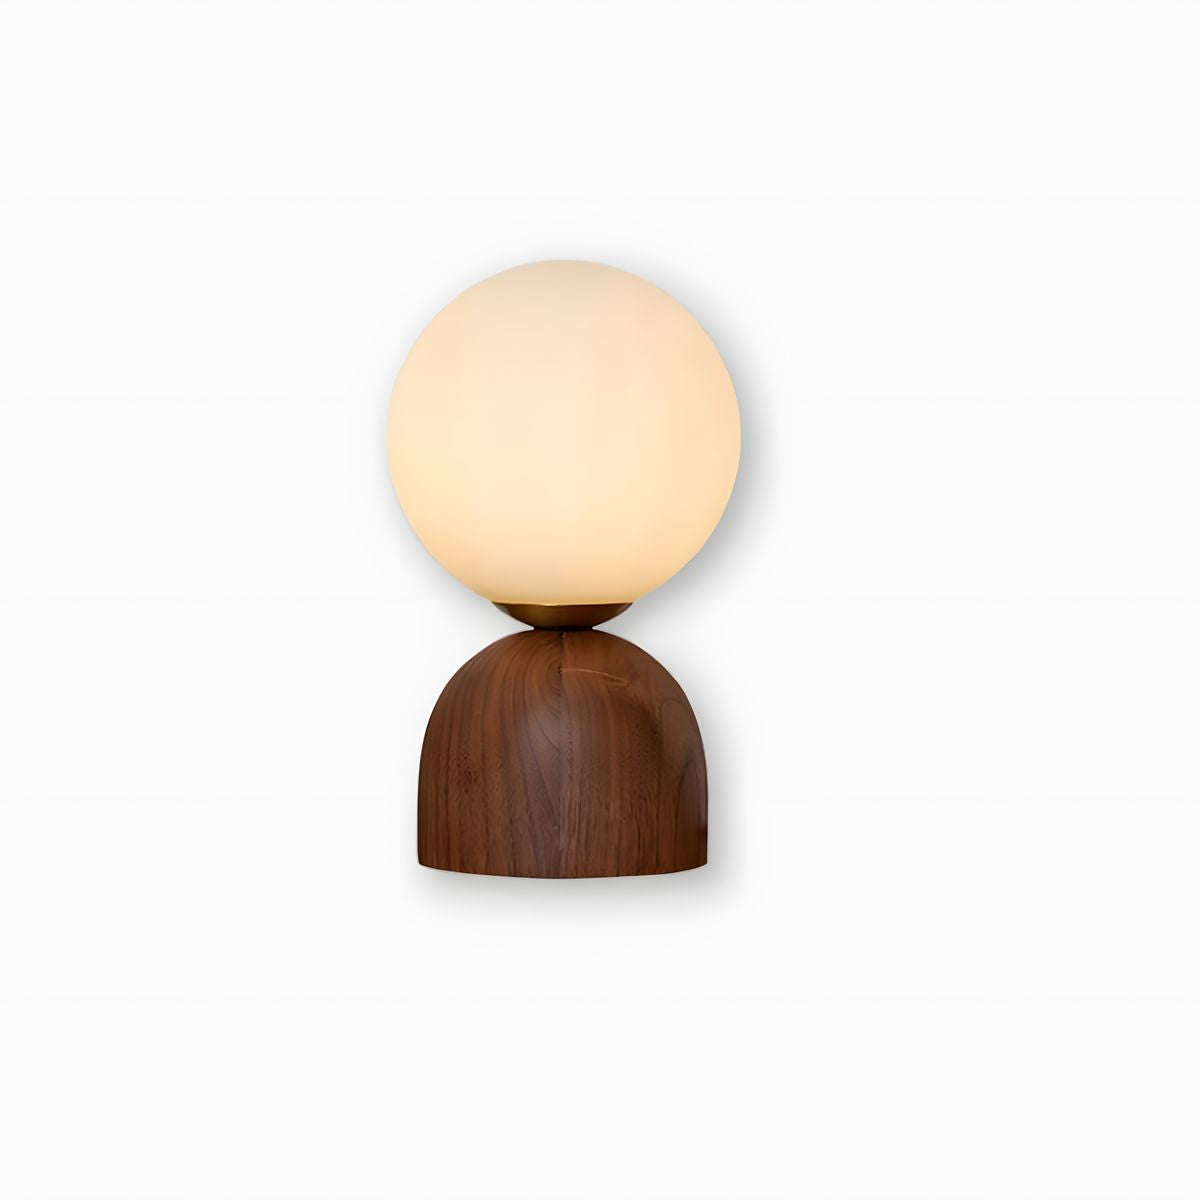 Wood Knuckle Table Lamp - Vinlighting